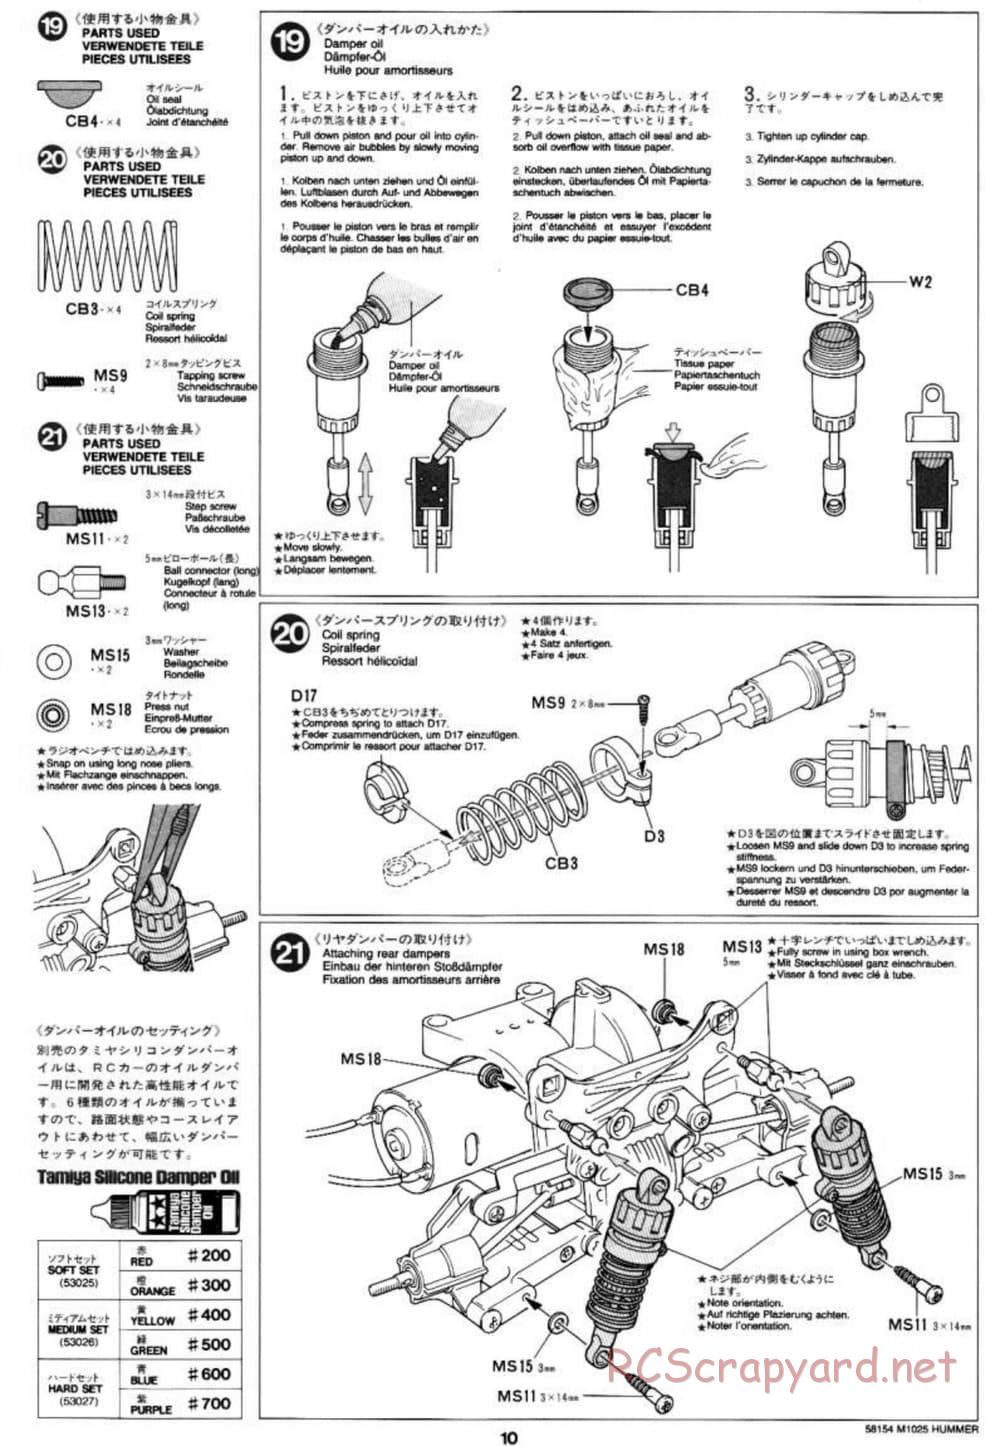 Tamiya - M1025 Hummer - TA-01 Chassis - Manual - Page 10